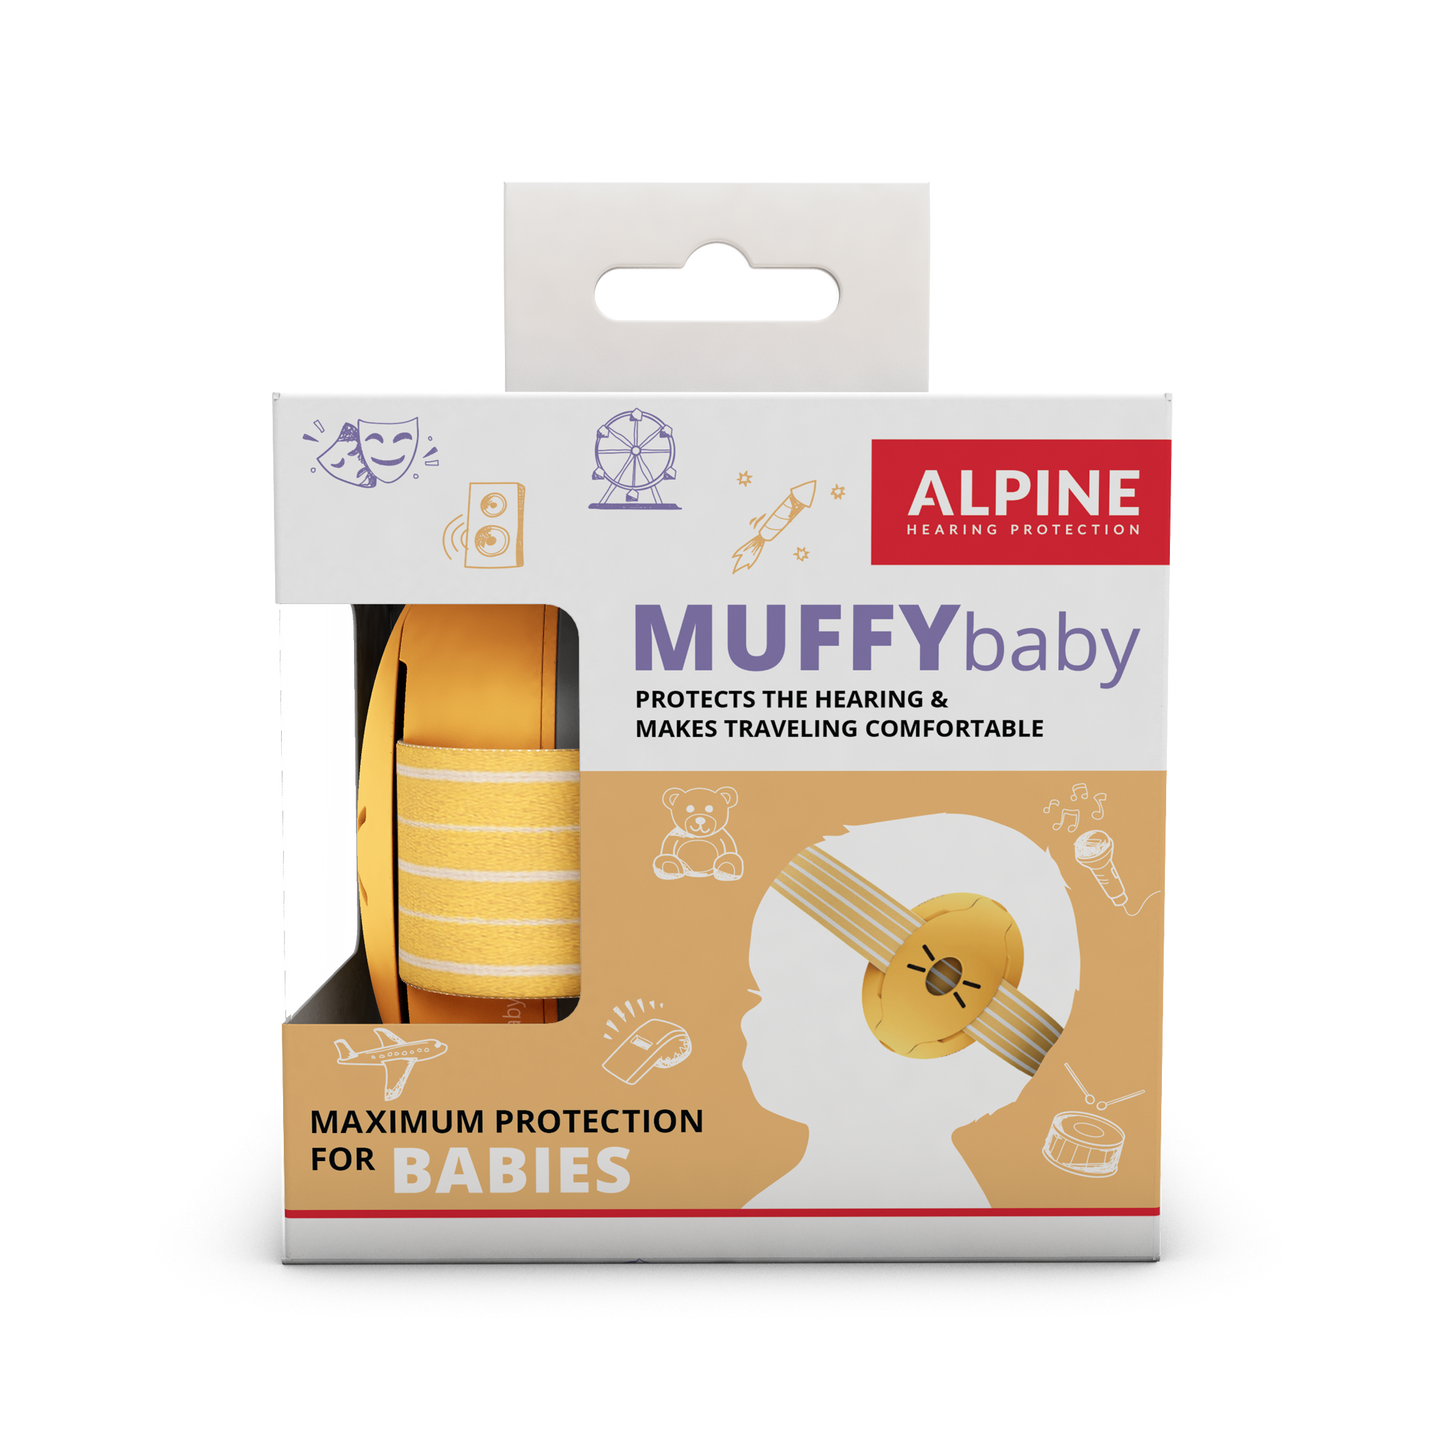 Muffy Baby Alpine Protection Auditive Bouchons d’oreilles Casque anti-bruit red dot award protéger votre oreille Enfants Bébés  